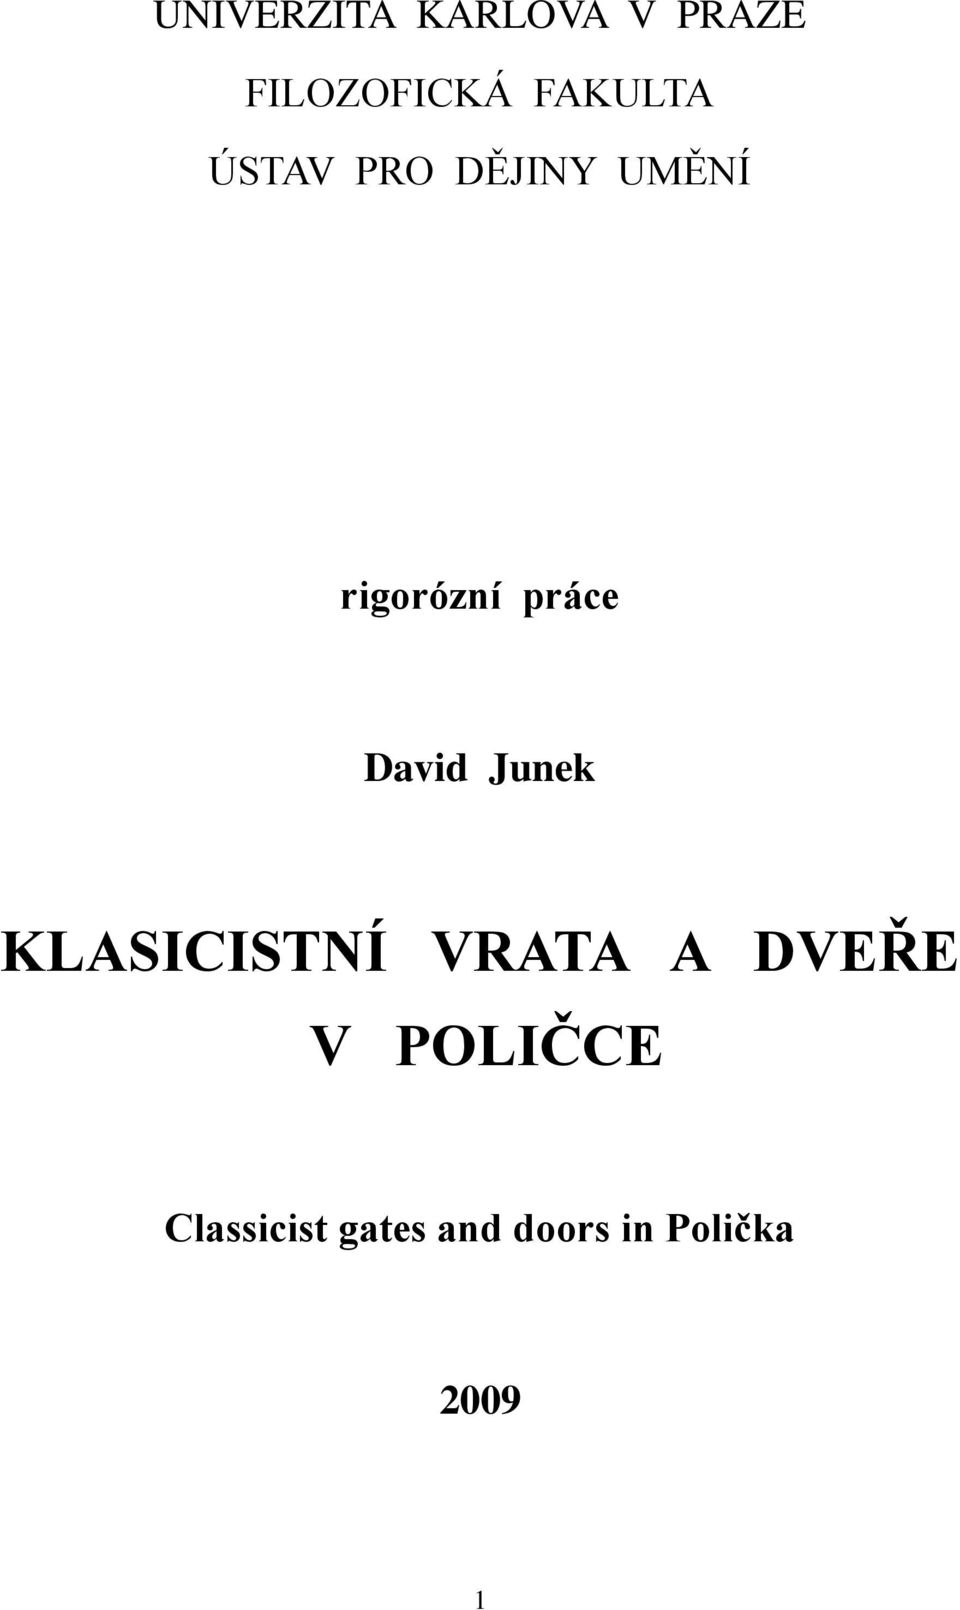 KLASICISTNÍ VRATA A DVEŘE V POLIČCE - PDF Stažení zdarma